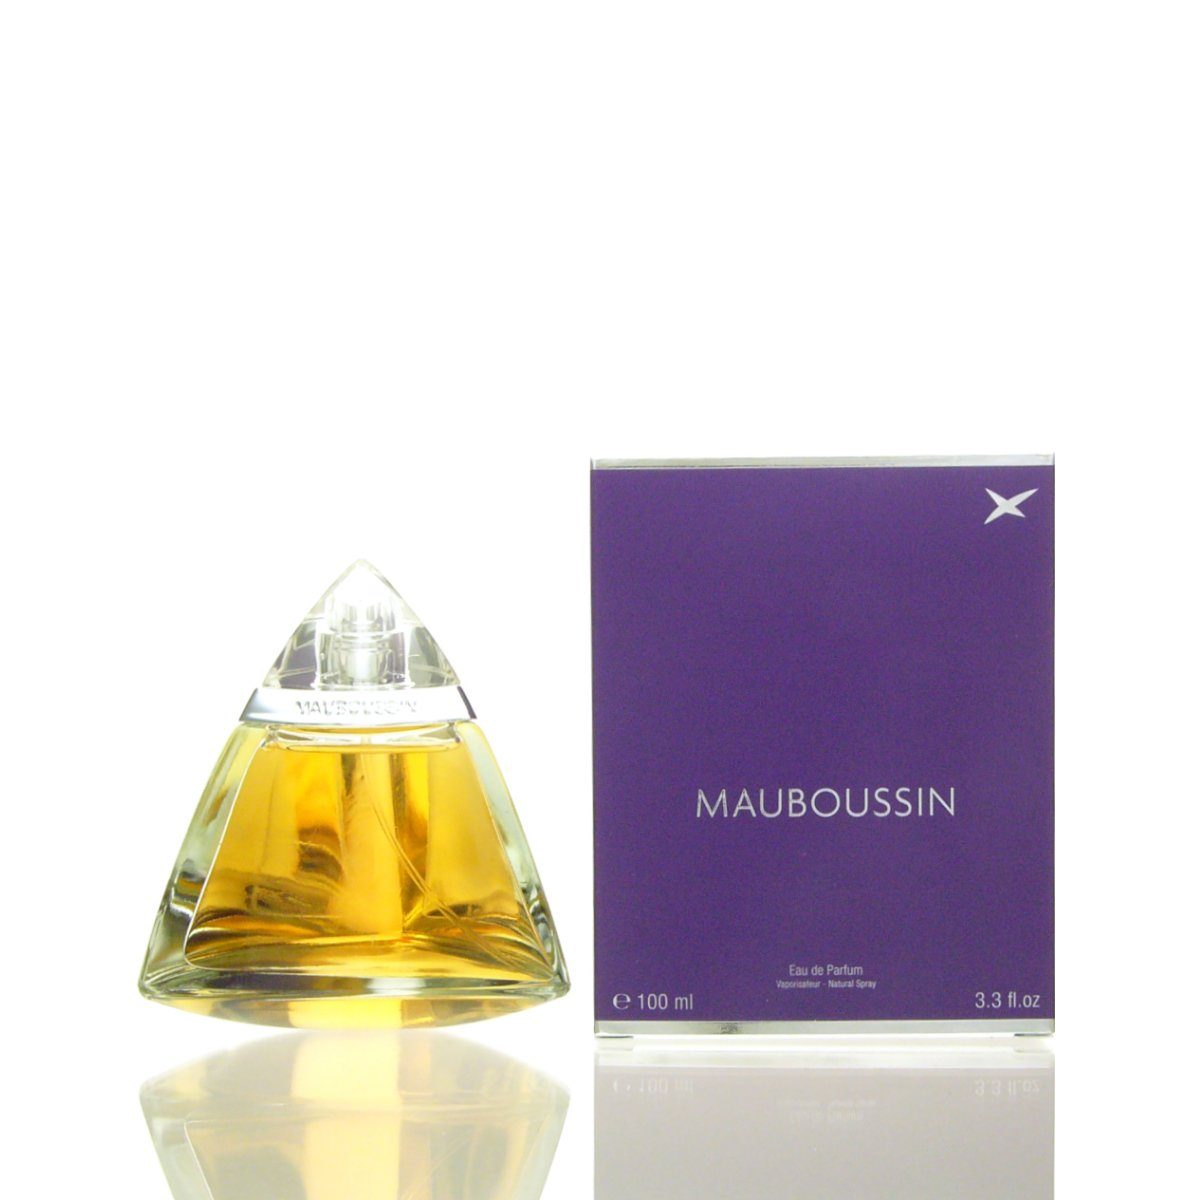 Mauboussin Eau de Parfum Mauboussin for Women Eau de Parfum 100 ml